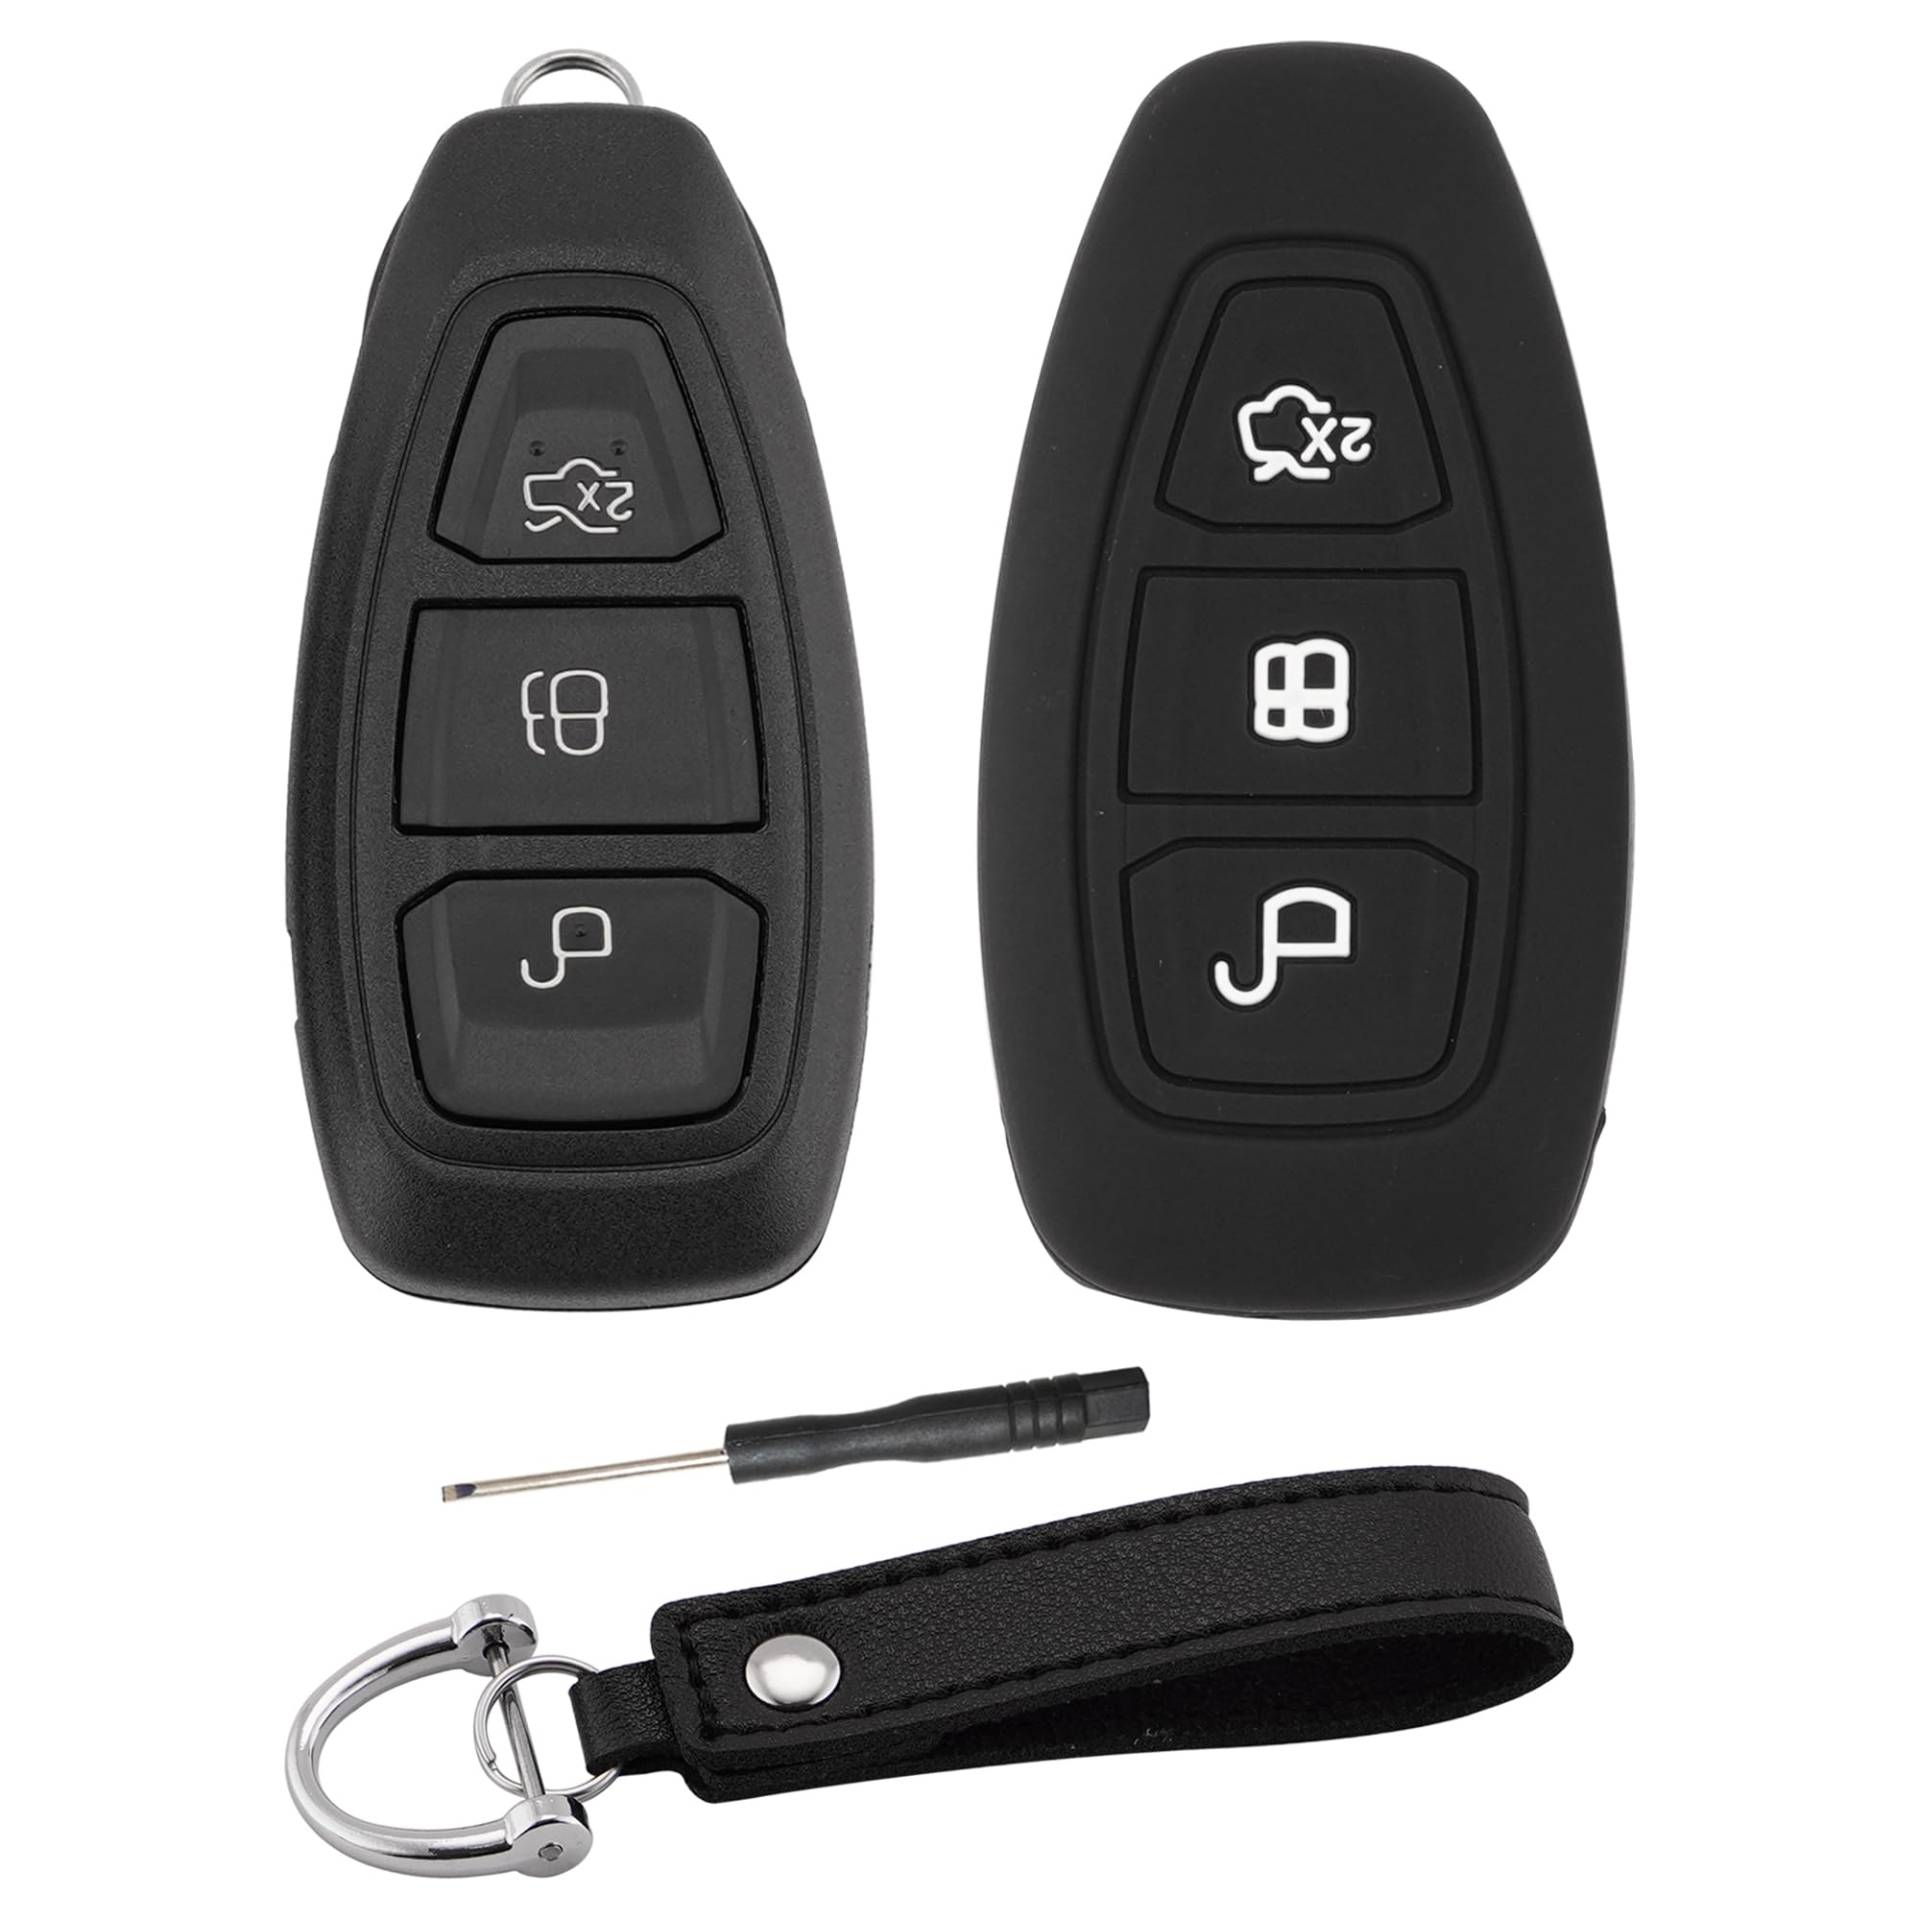 ERMWALR Autoschlüsselgehäuse & Schlüsselhülle mit Schlüsselanhänger für Ford, 3-Tasten-Schlüsselanhänger-Hülle, passend für Ford Fiesta Focus Kuga C-Max Grand C-Max Galaxy B-Max S-Max (KG-Frd-3) von ERMWALR